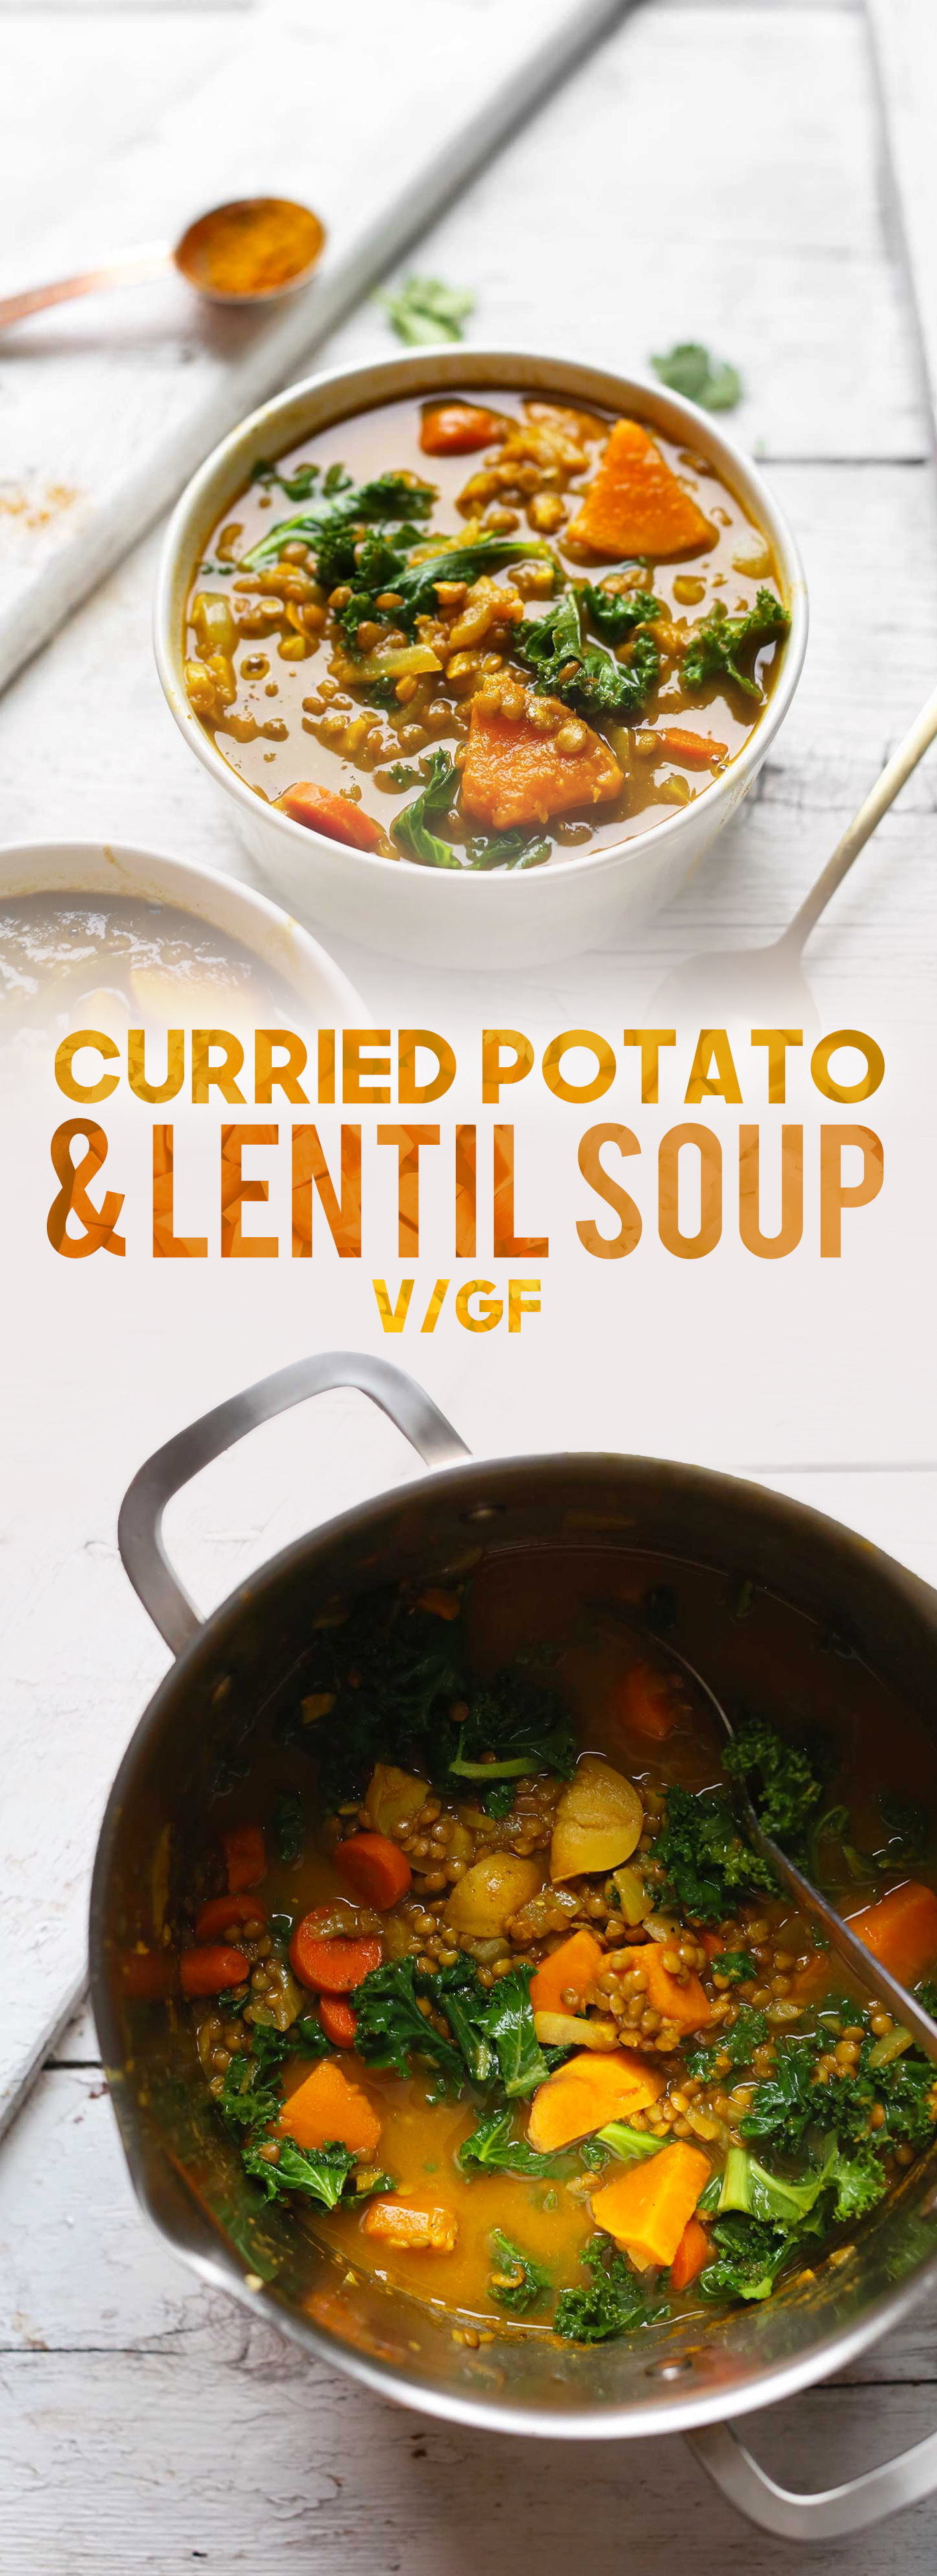 Minimalist-baker-curried-potato-lentil-soup